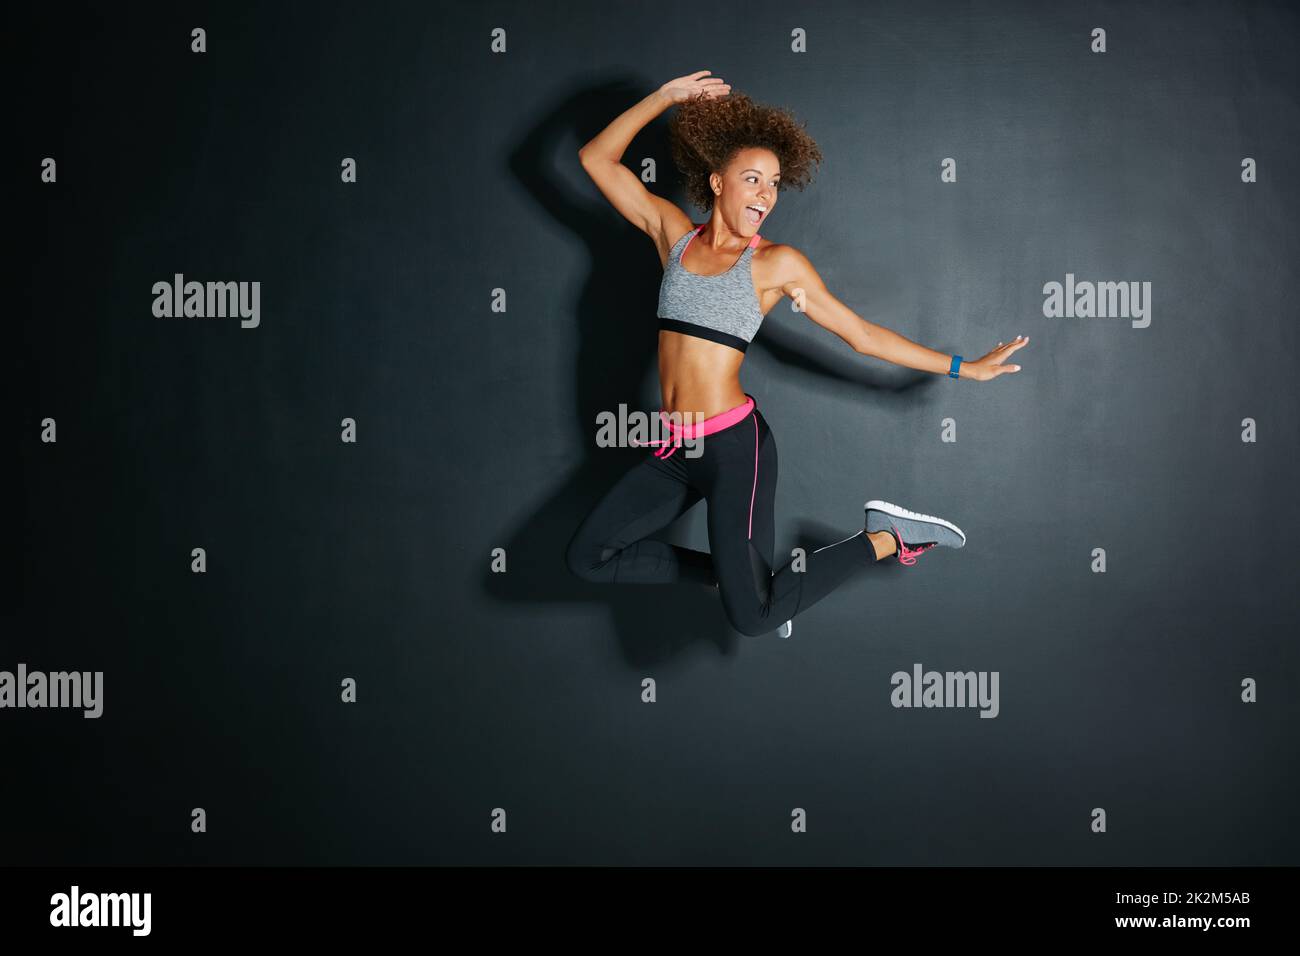 Schauen Sie immer auf die helle Seite des Lebens. Aufnahme einer sportlichen jungen Frau, die vor grauem Hintergrund springt. Stockfoto